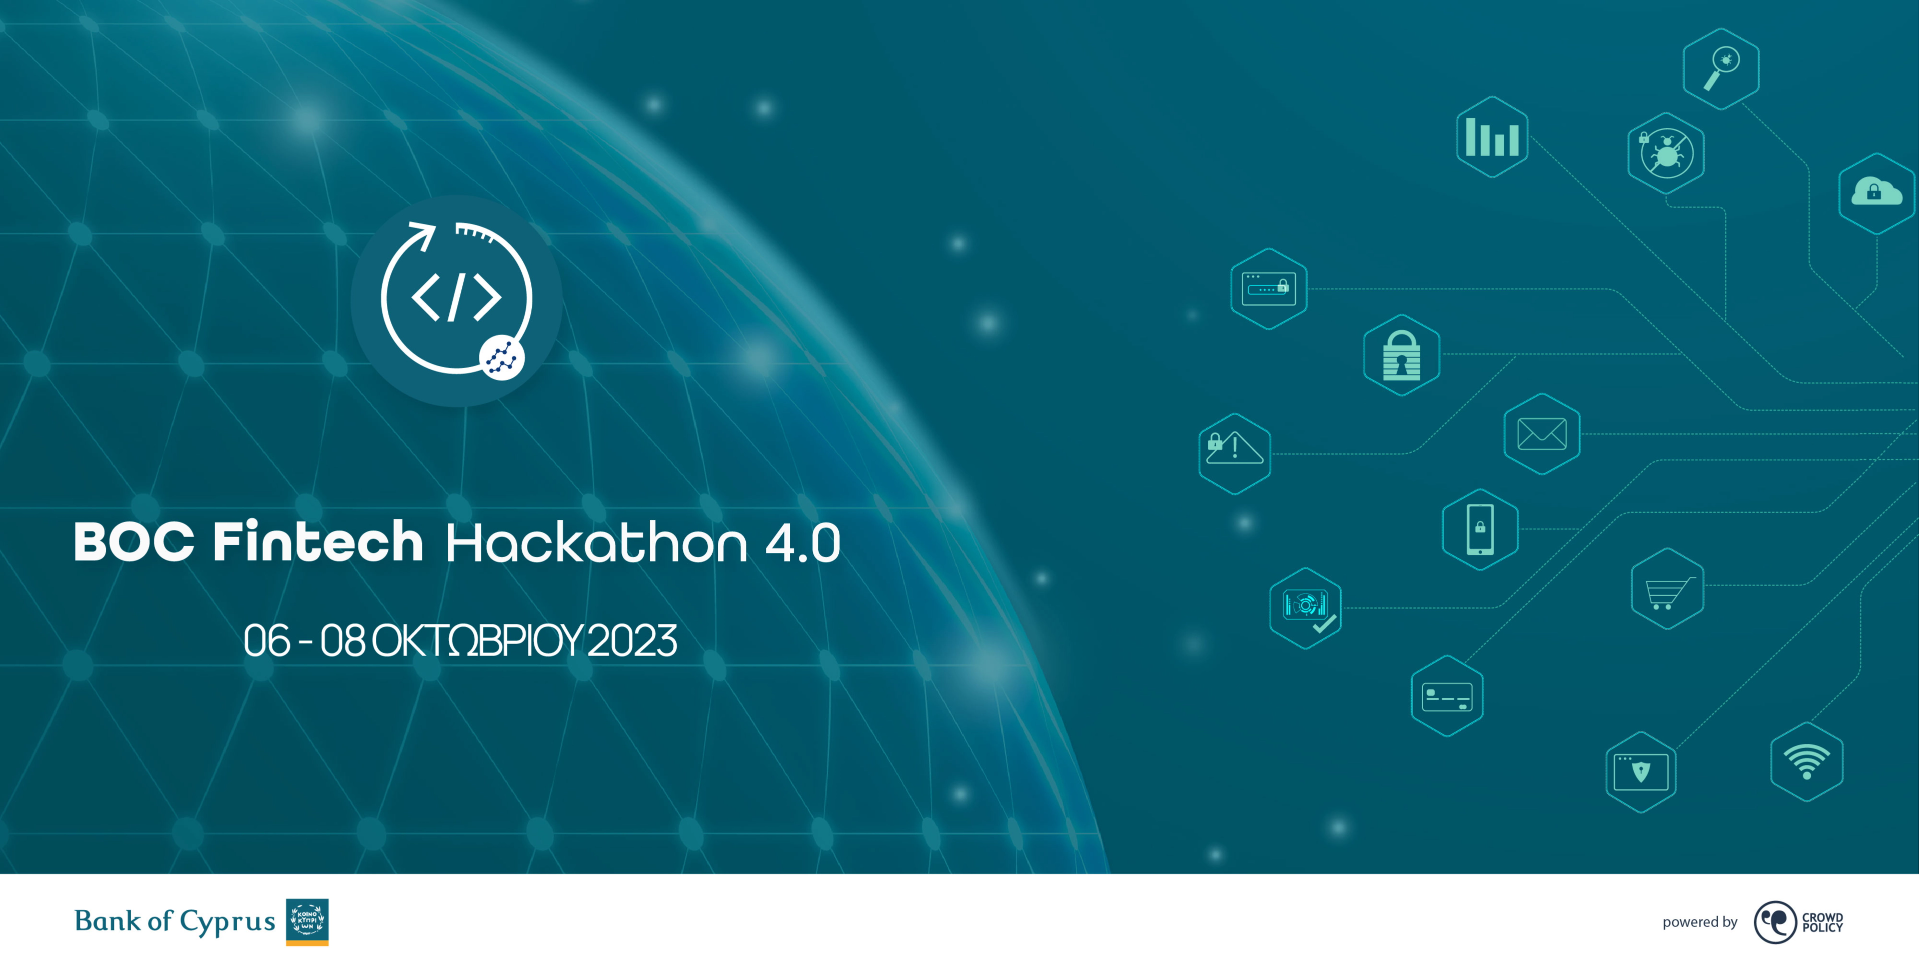 4ος Μαραθώνιος ανάπτυξης εφαρμογών BOC Fintech Hackathon 4.0 - 06 - 08 Οκτωβρίου 2023